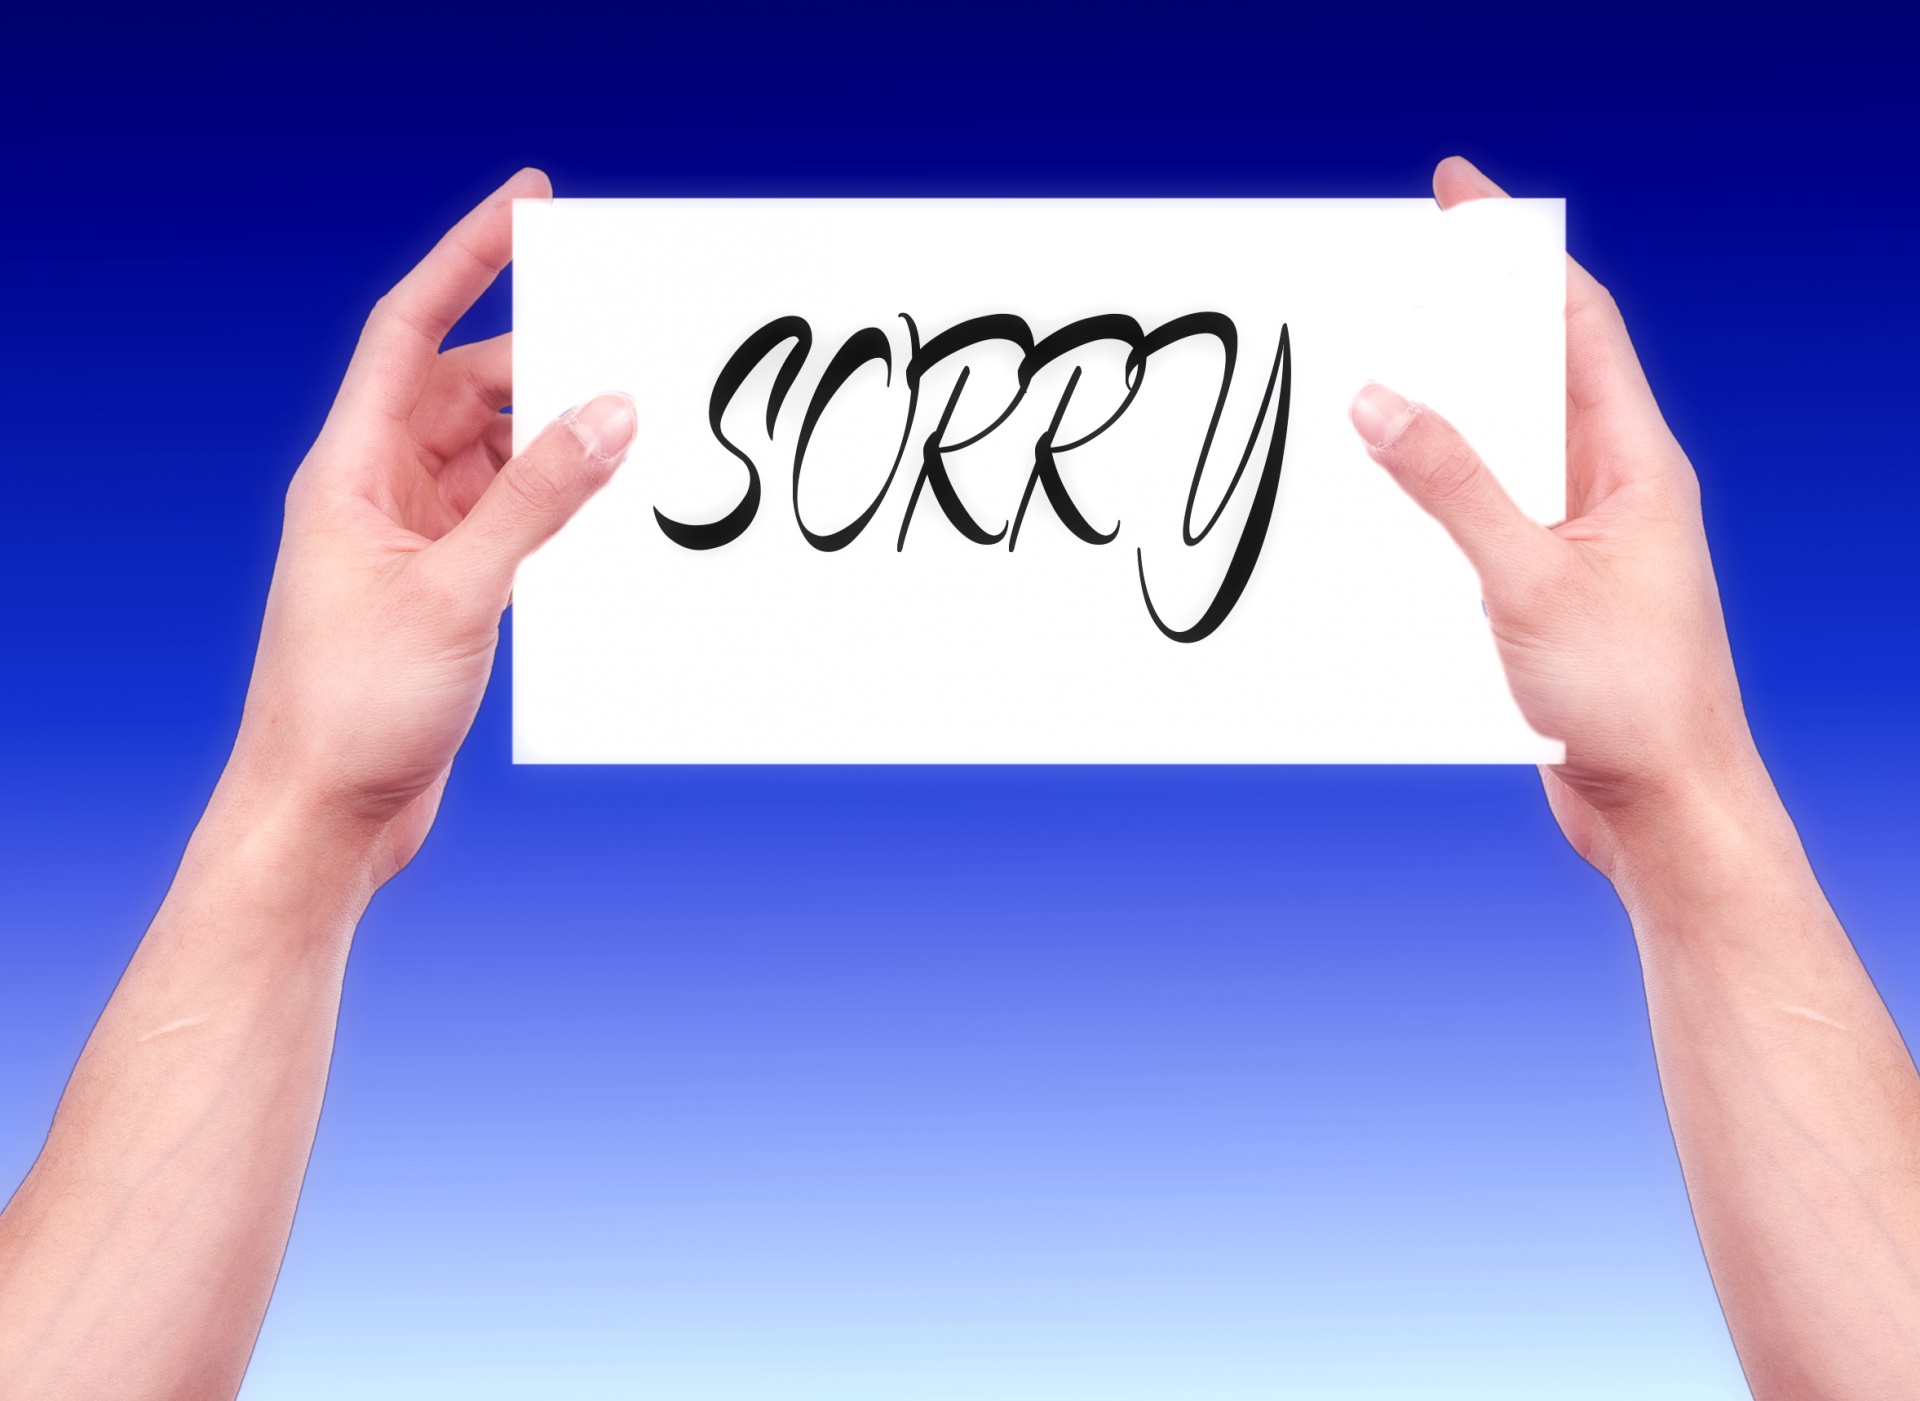 apology apologize apologize sayings free photo